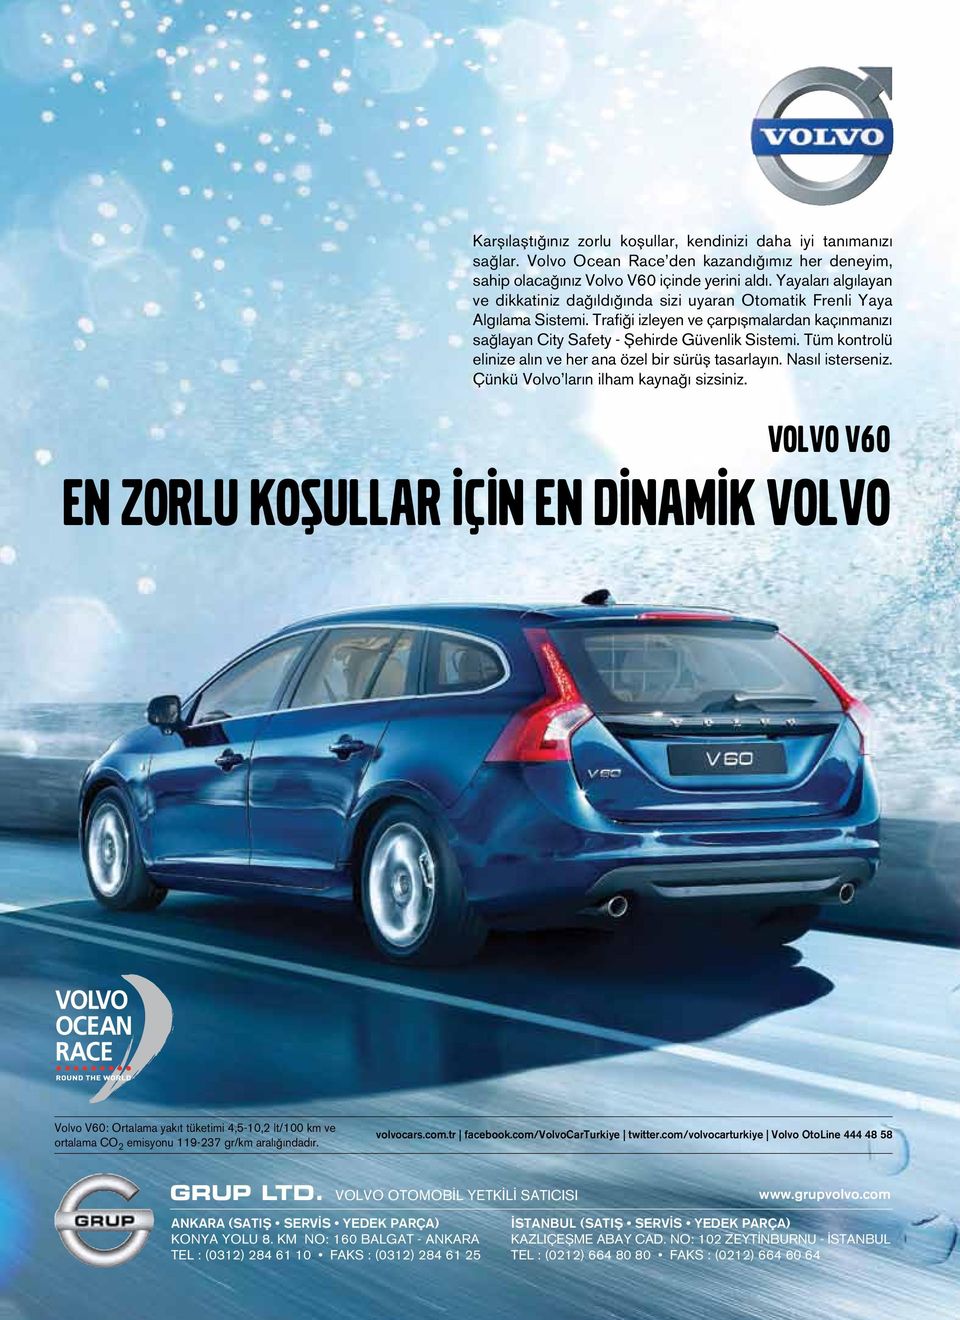 Tüm kontrolü elinize alın ve her ana özel bir sürüş tasarlayın. Nasıl isterseniz. Çünkü Volvo ların ilham kaynağı sizsiniz.